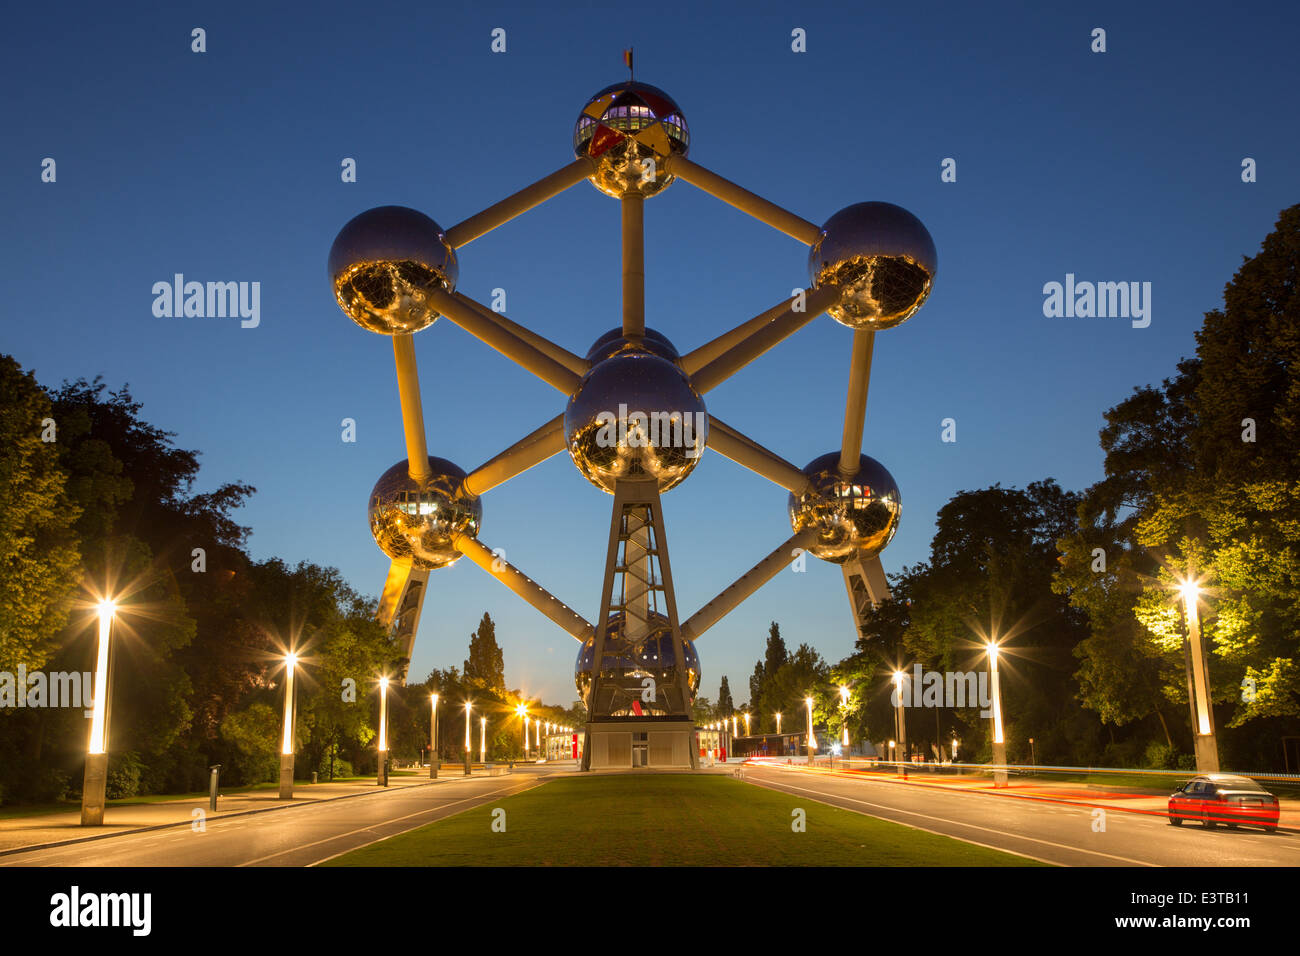 Bruxelles, Belgique - 16 juin 2014 : Atomium au crépuscule. Bâtiment moderne a été construit pour l'Expo '58 Banque D'Images